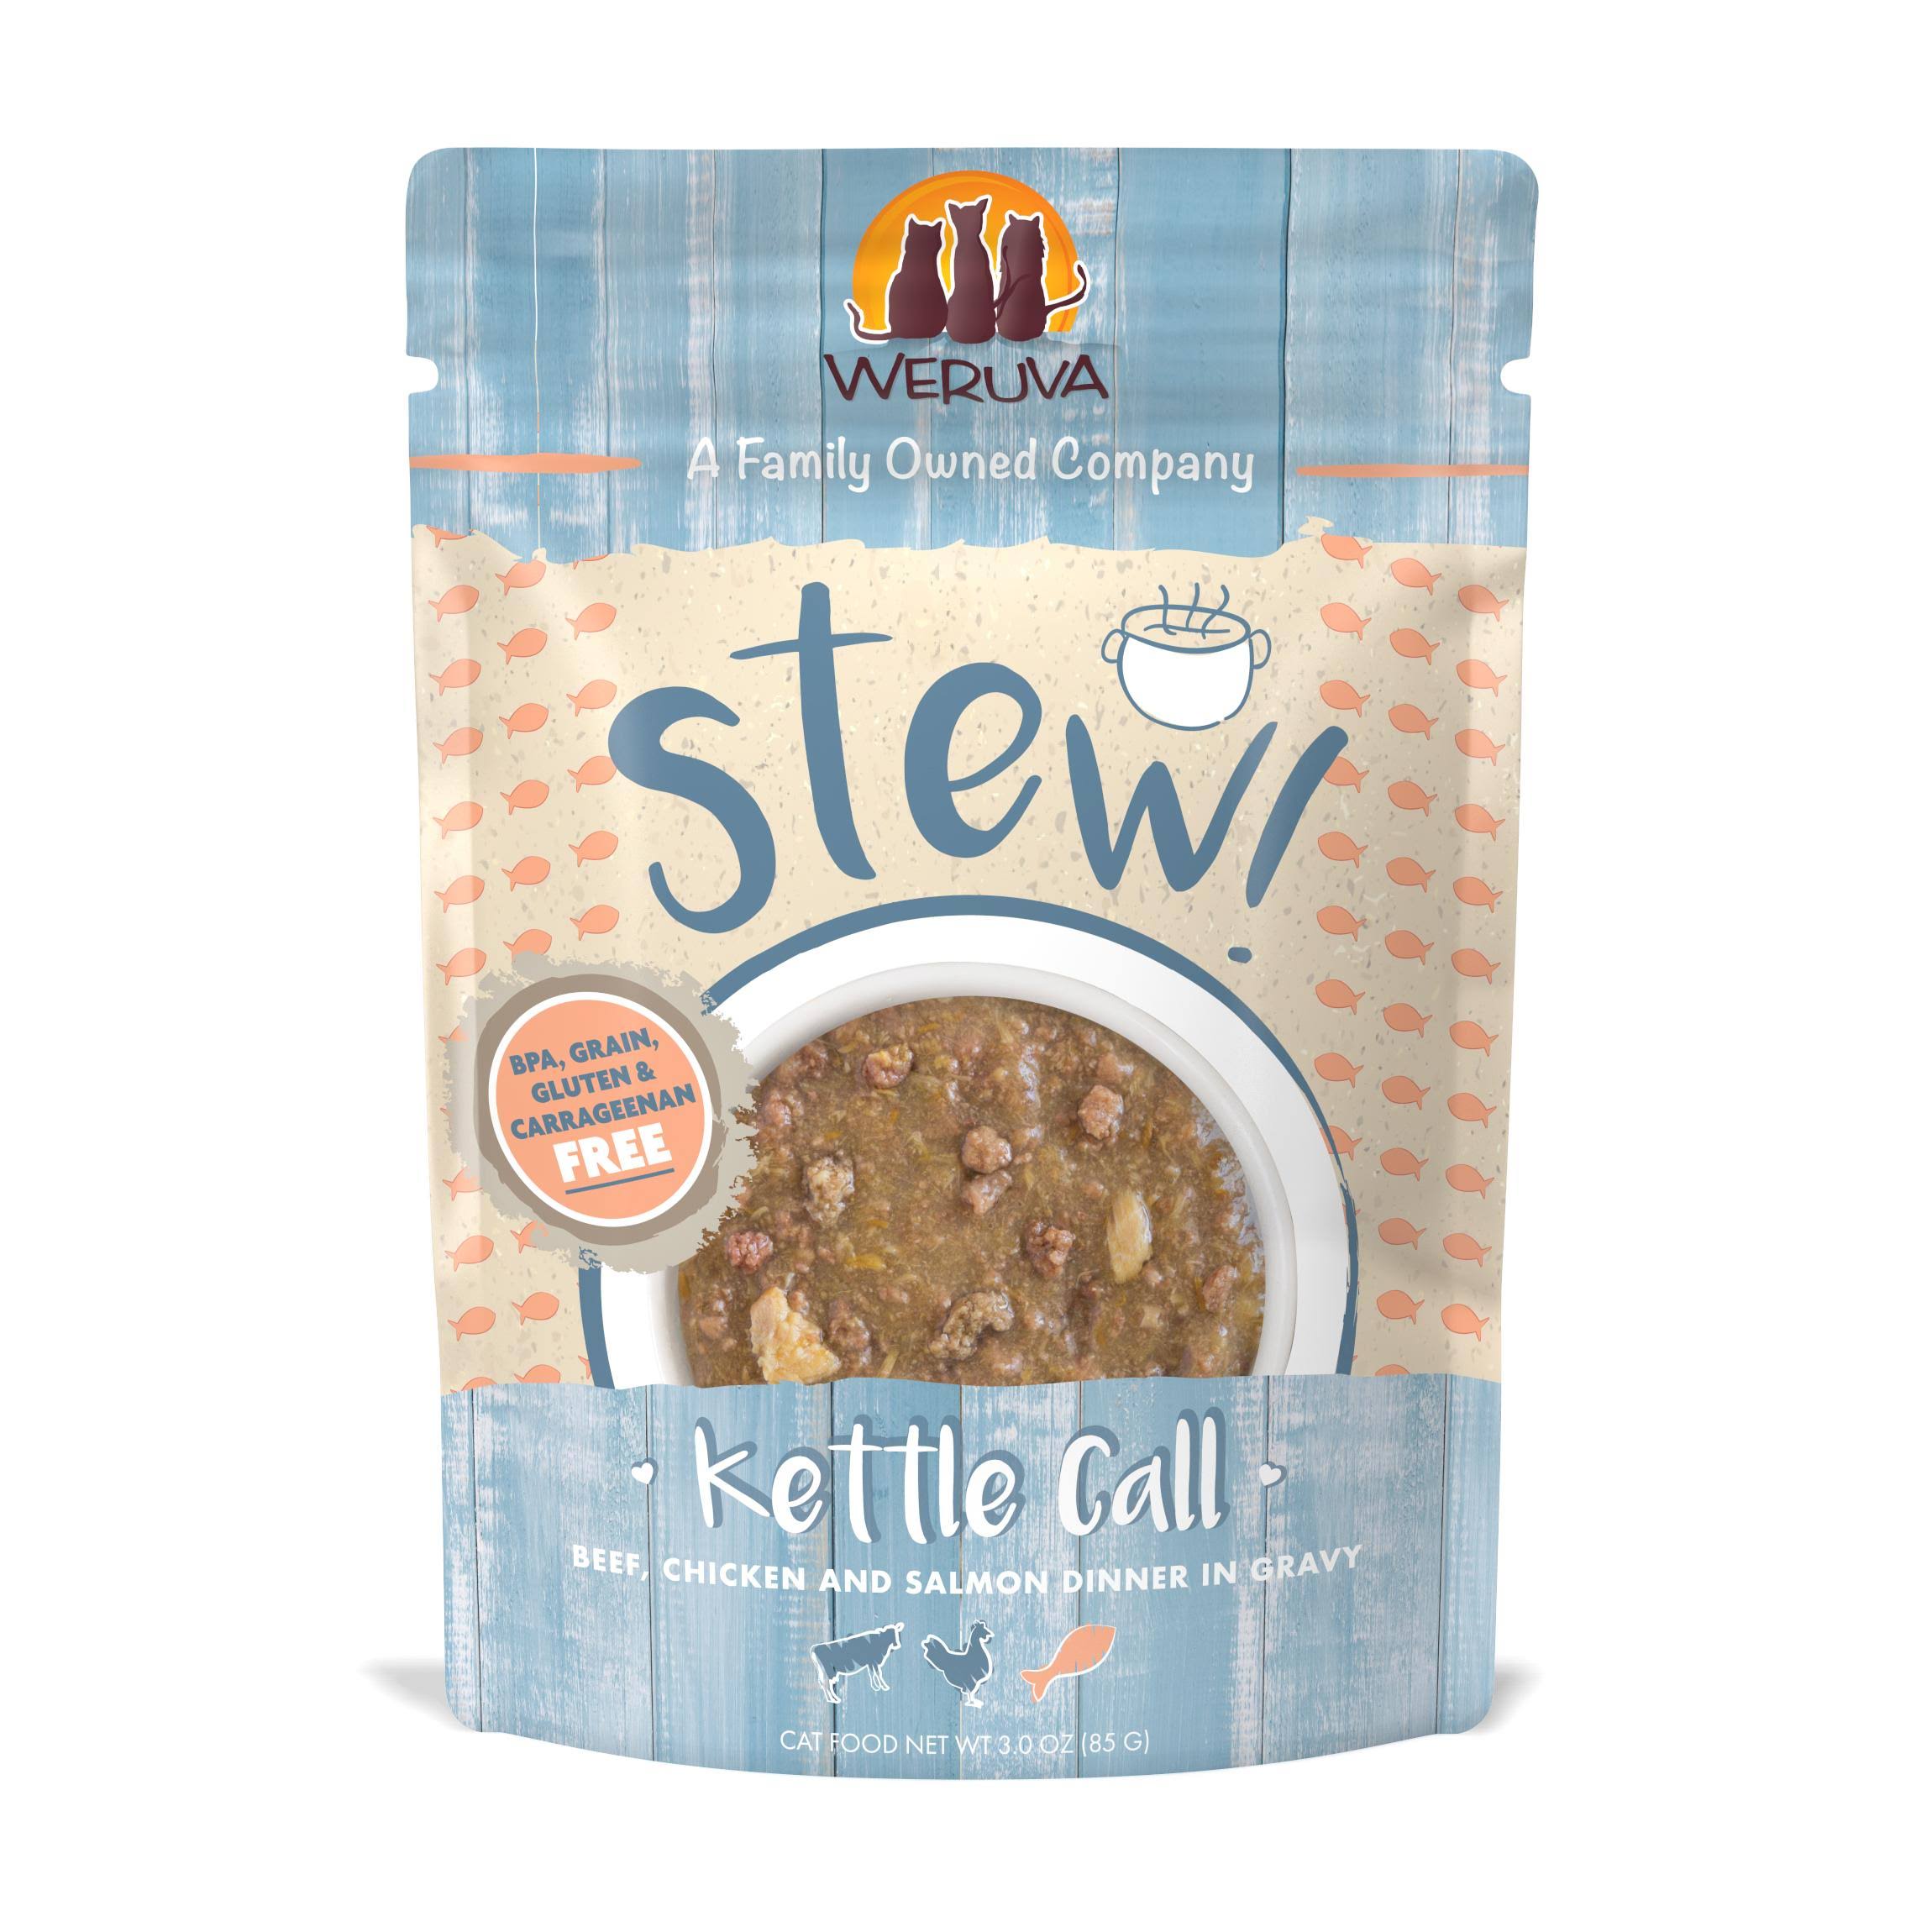 Weruva Stew! Kettle Call Beef, Chicken and Salmon Dinner in Gravy Cat Food - 3 oz